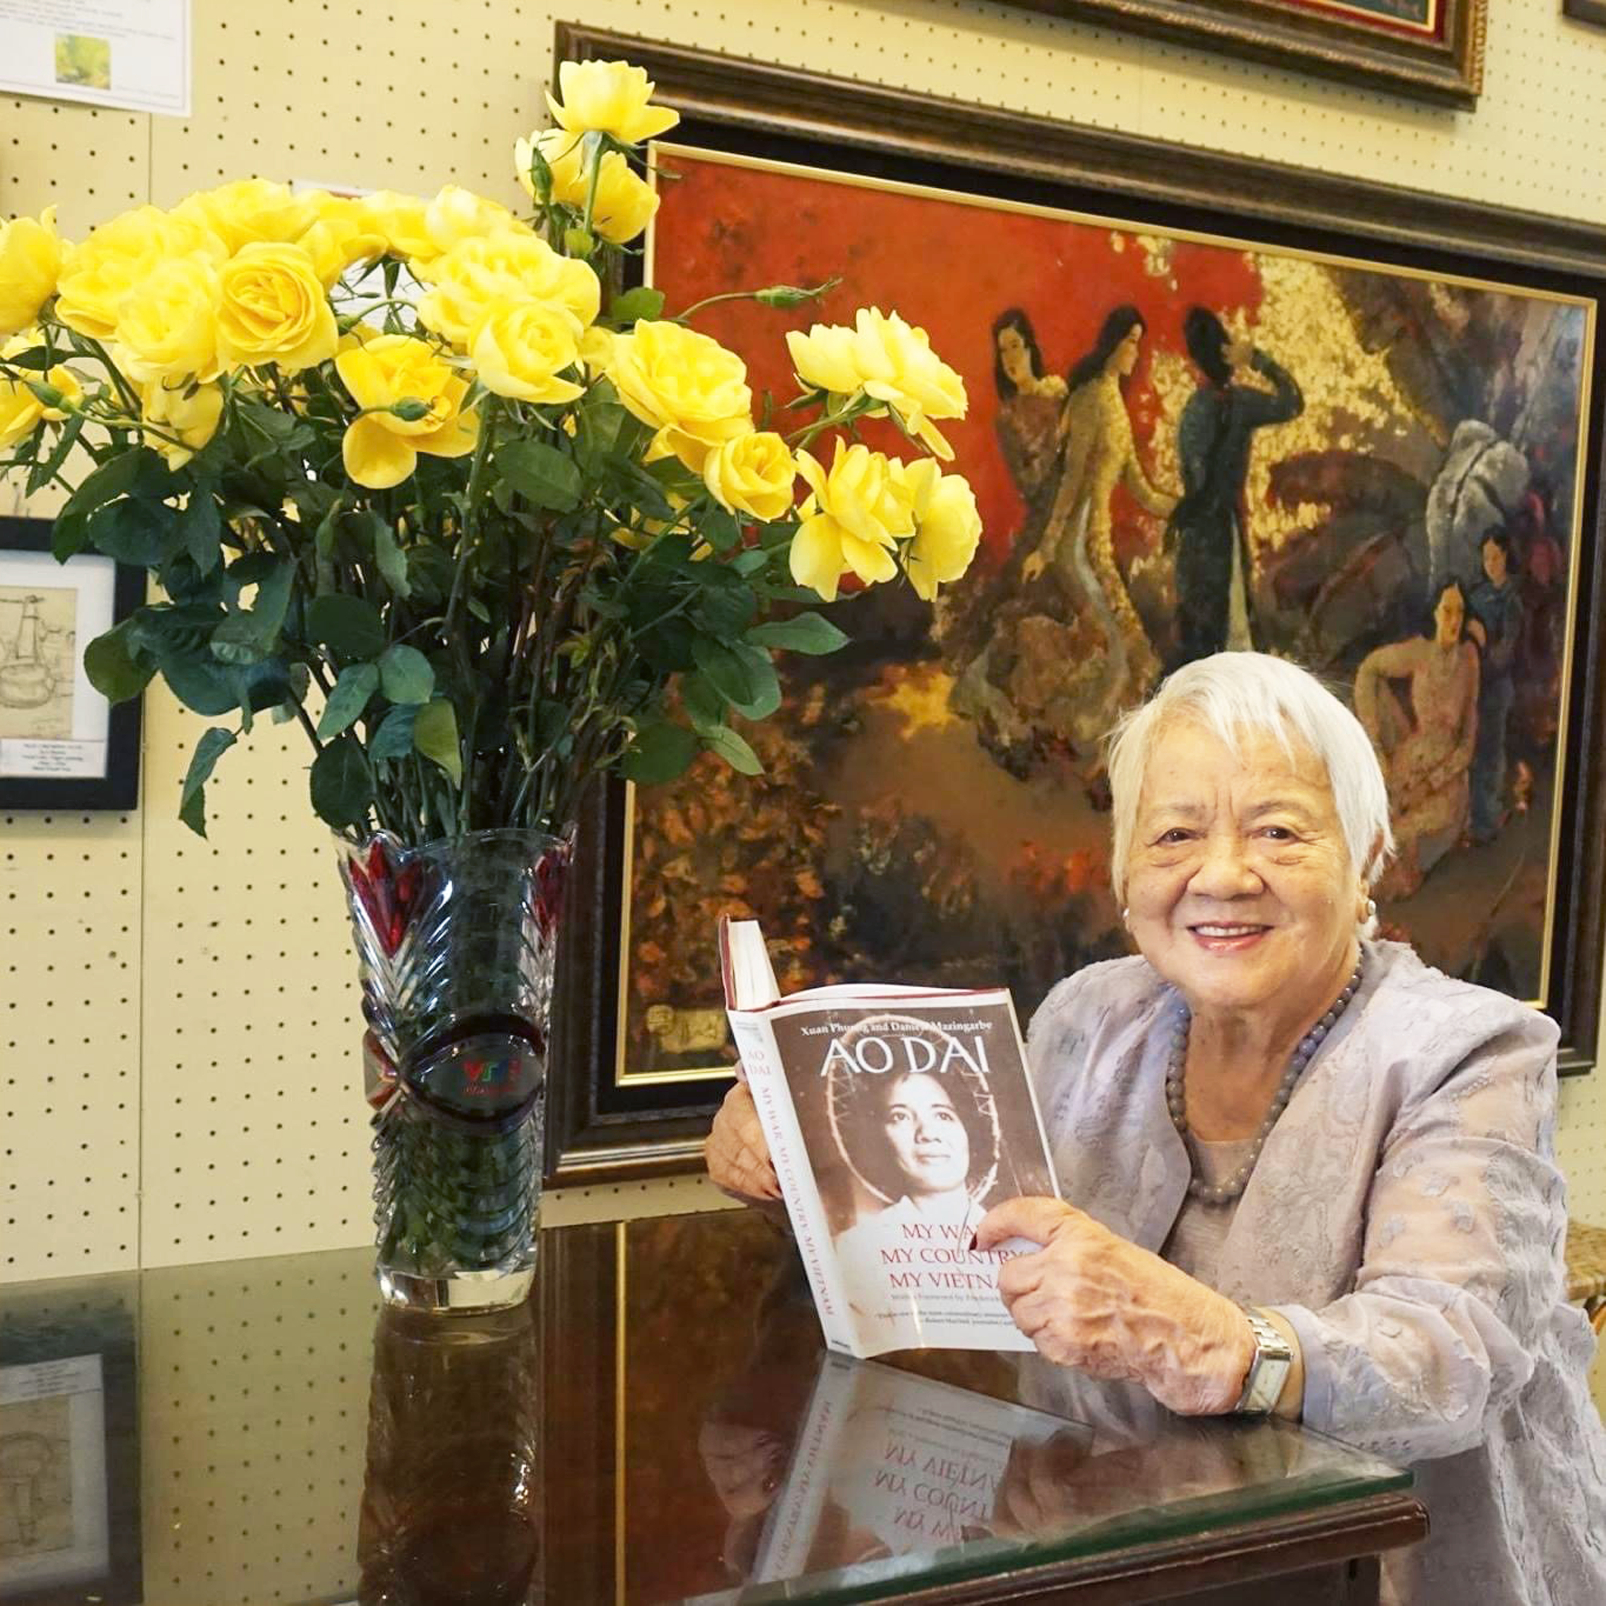 Đạo diễn, nhà văn, chủ Gallery Lotus Nguyễn Thị Xuân Phượng trẻ đẹp ở tuổi 95